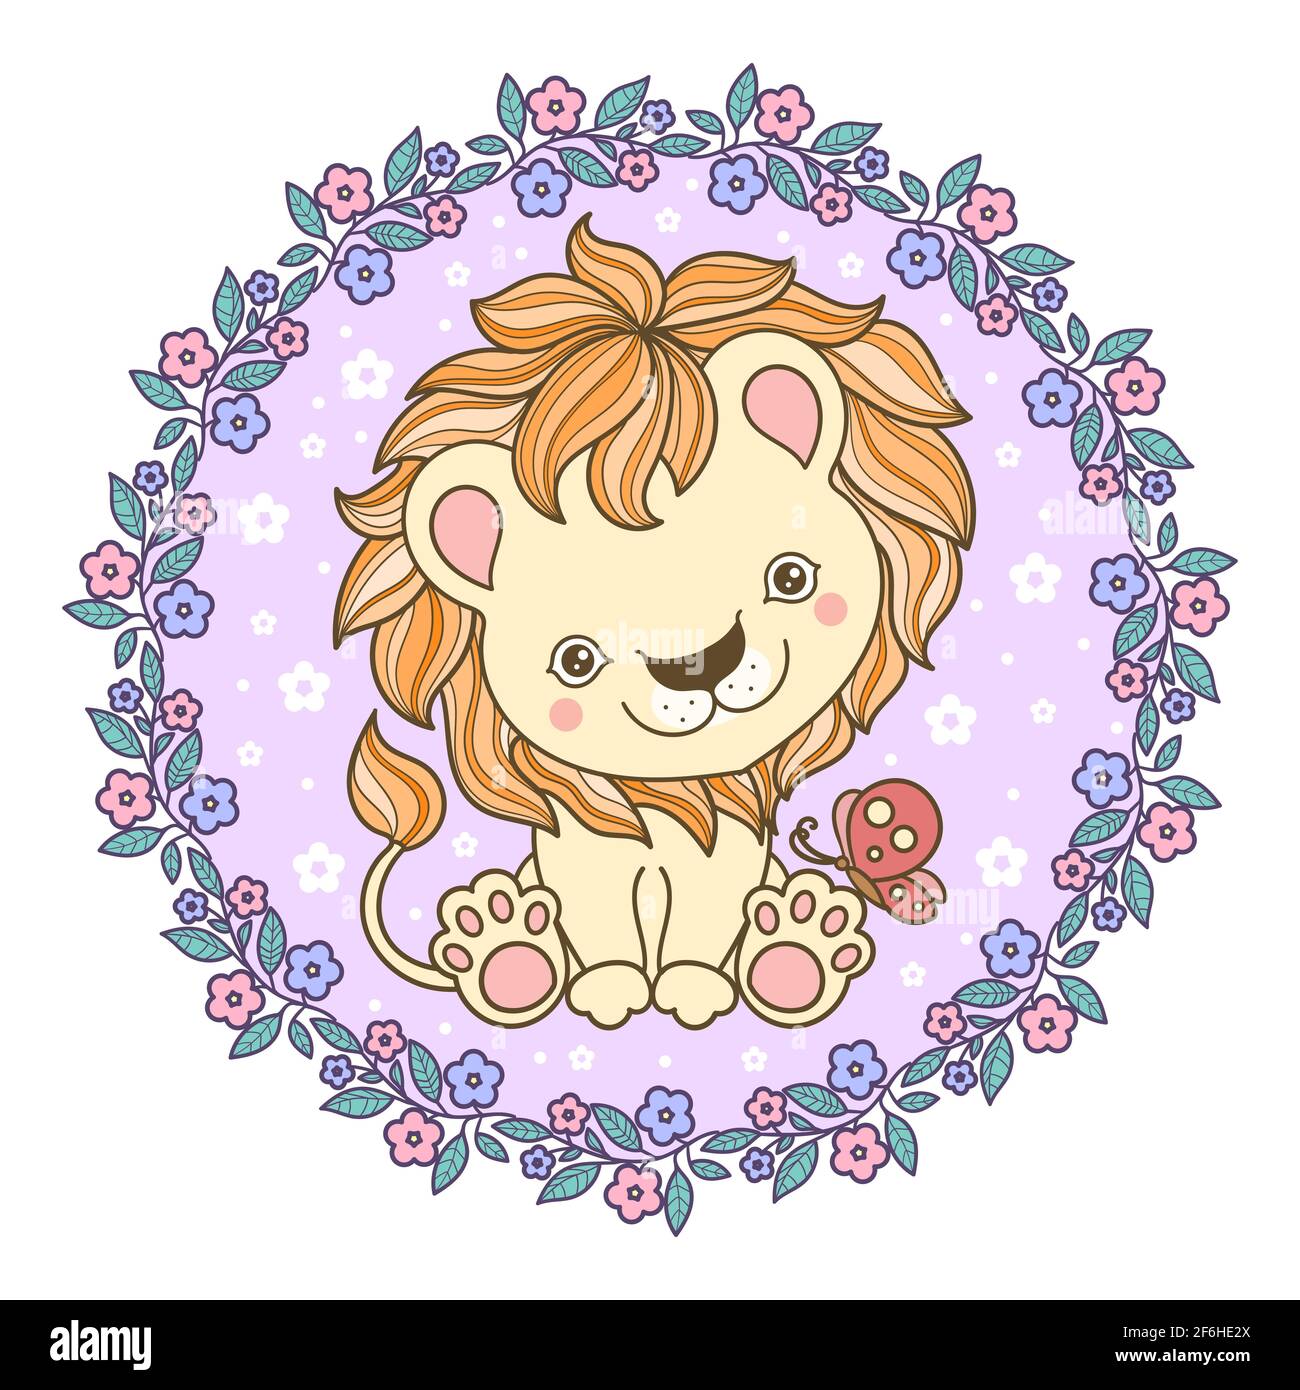 Mignon petit lion cub avec un papillon dans un cadre rond de fleurs. Illustration pour enfants. Vecteur Illustration de Vecteur